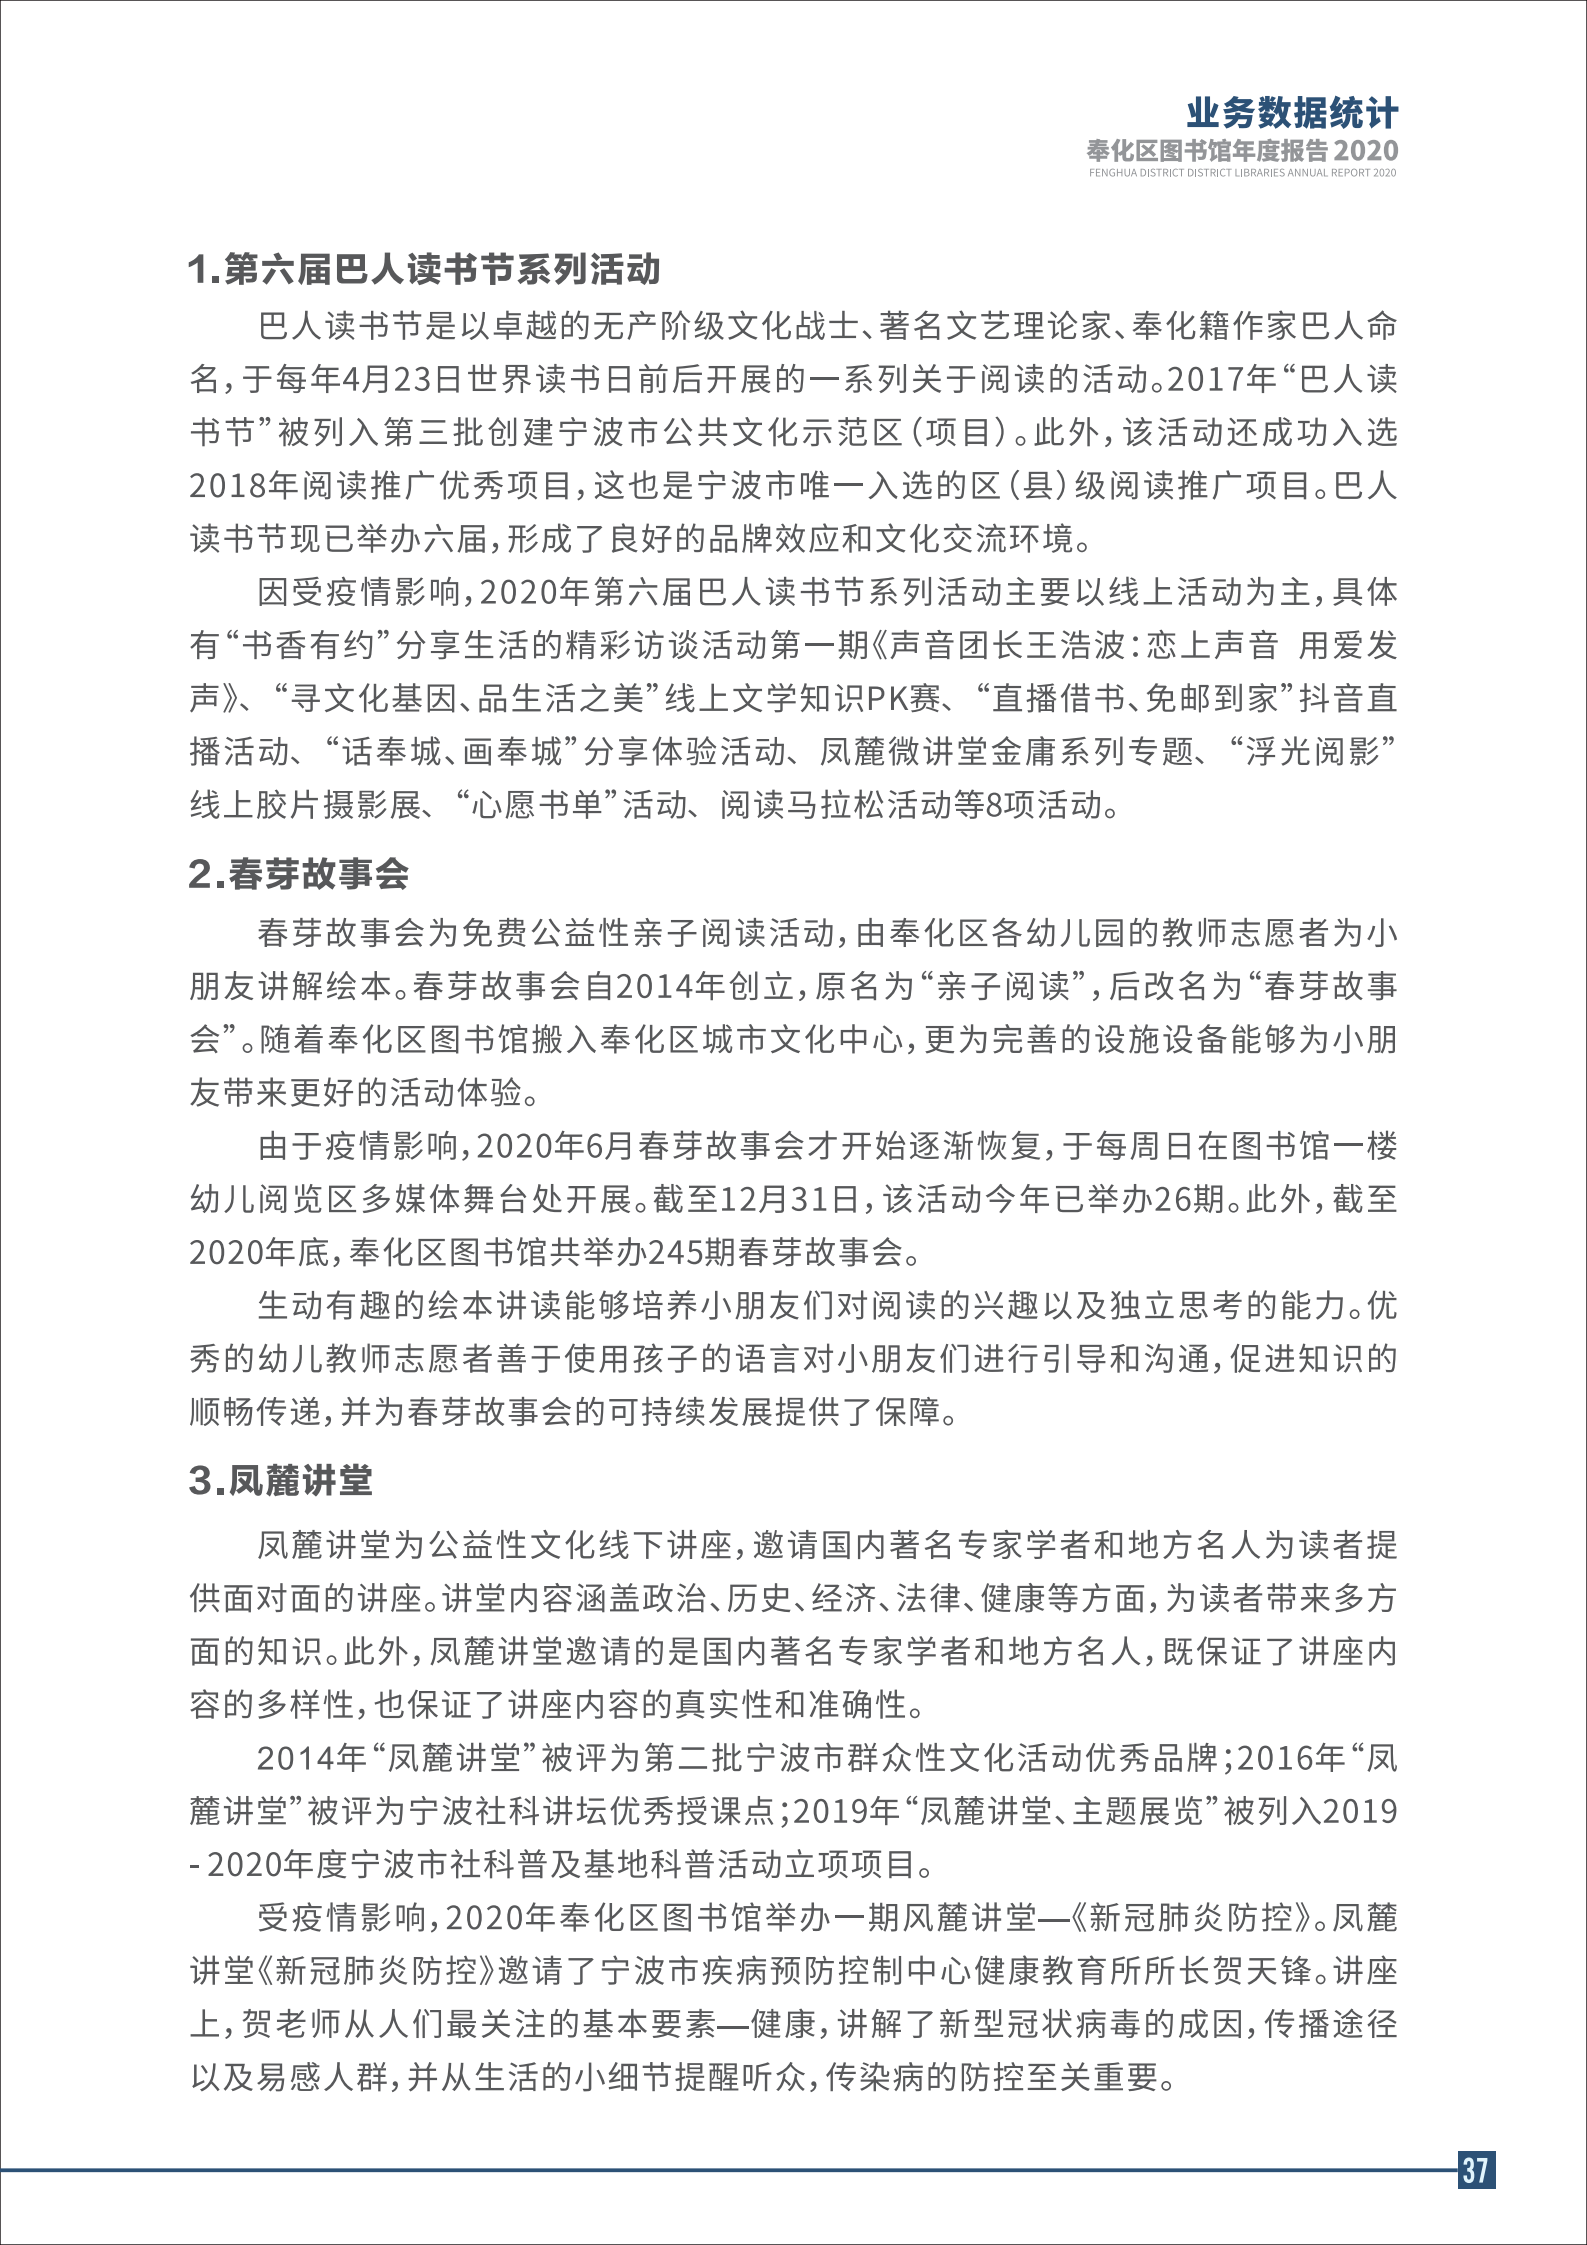 宁波市奉化区图书馆2020年年度报告 终稿_37.png